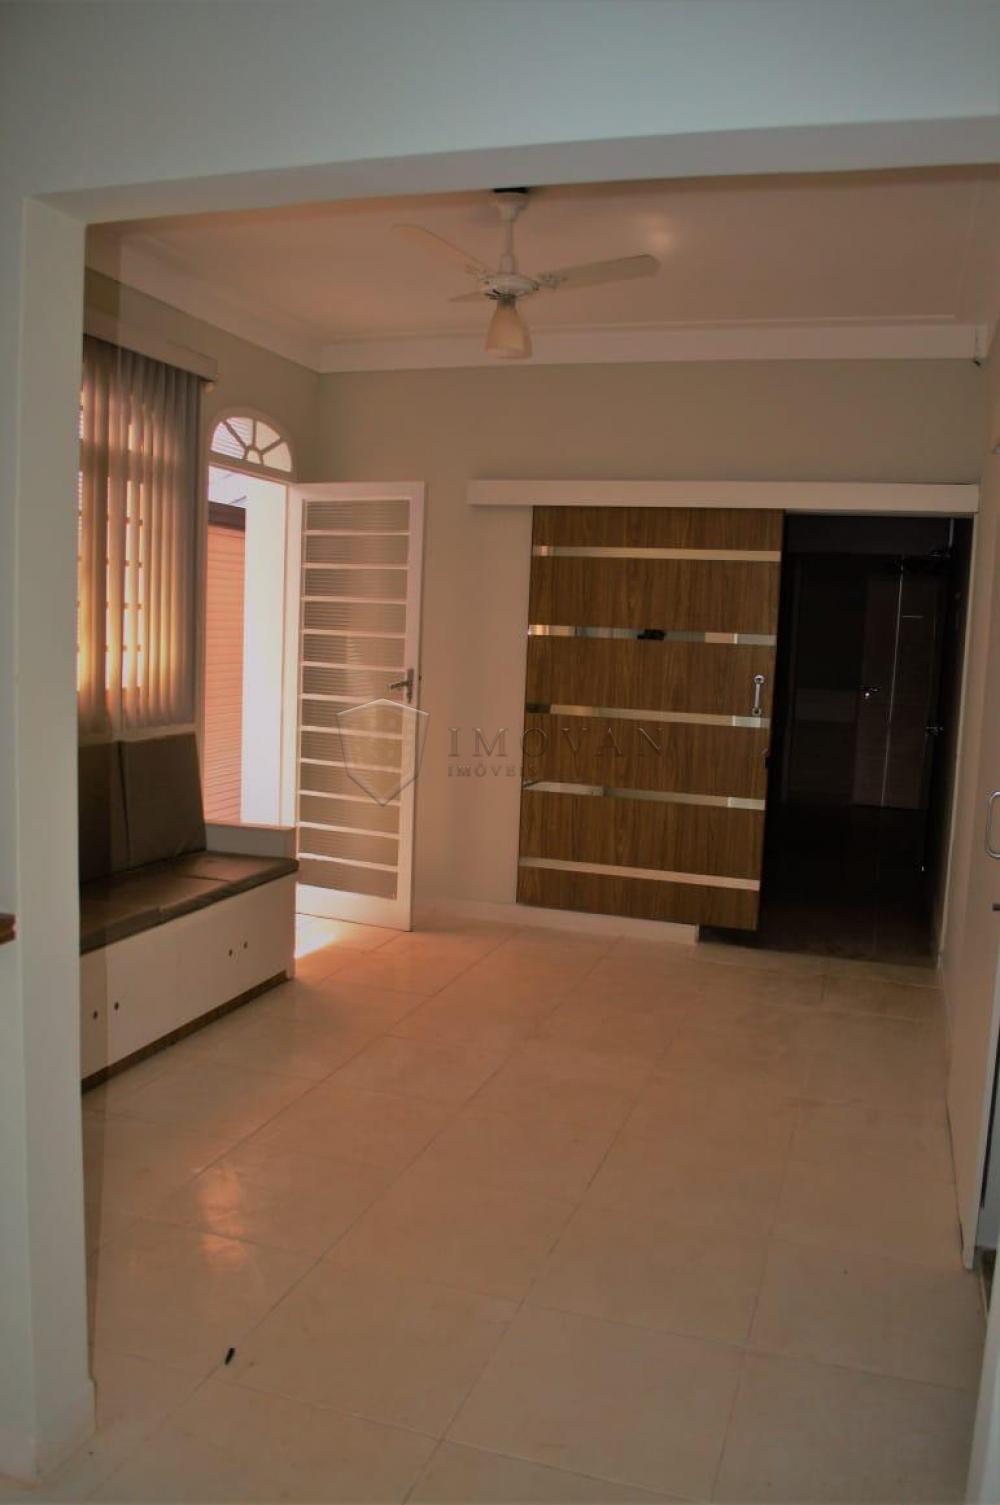 Alugar Casa / Sobrado em Ribeirão Preto R$ 6.000,00 - Foto 17